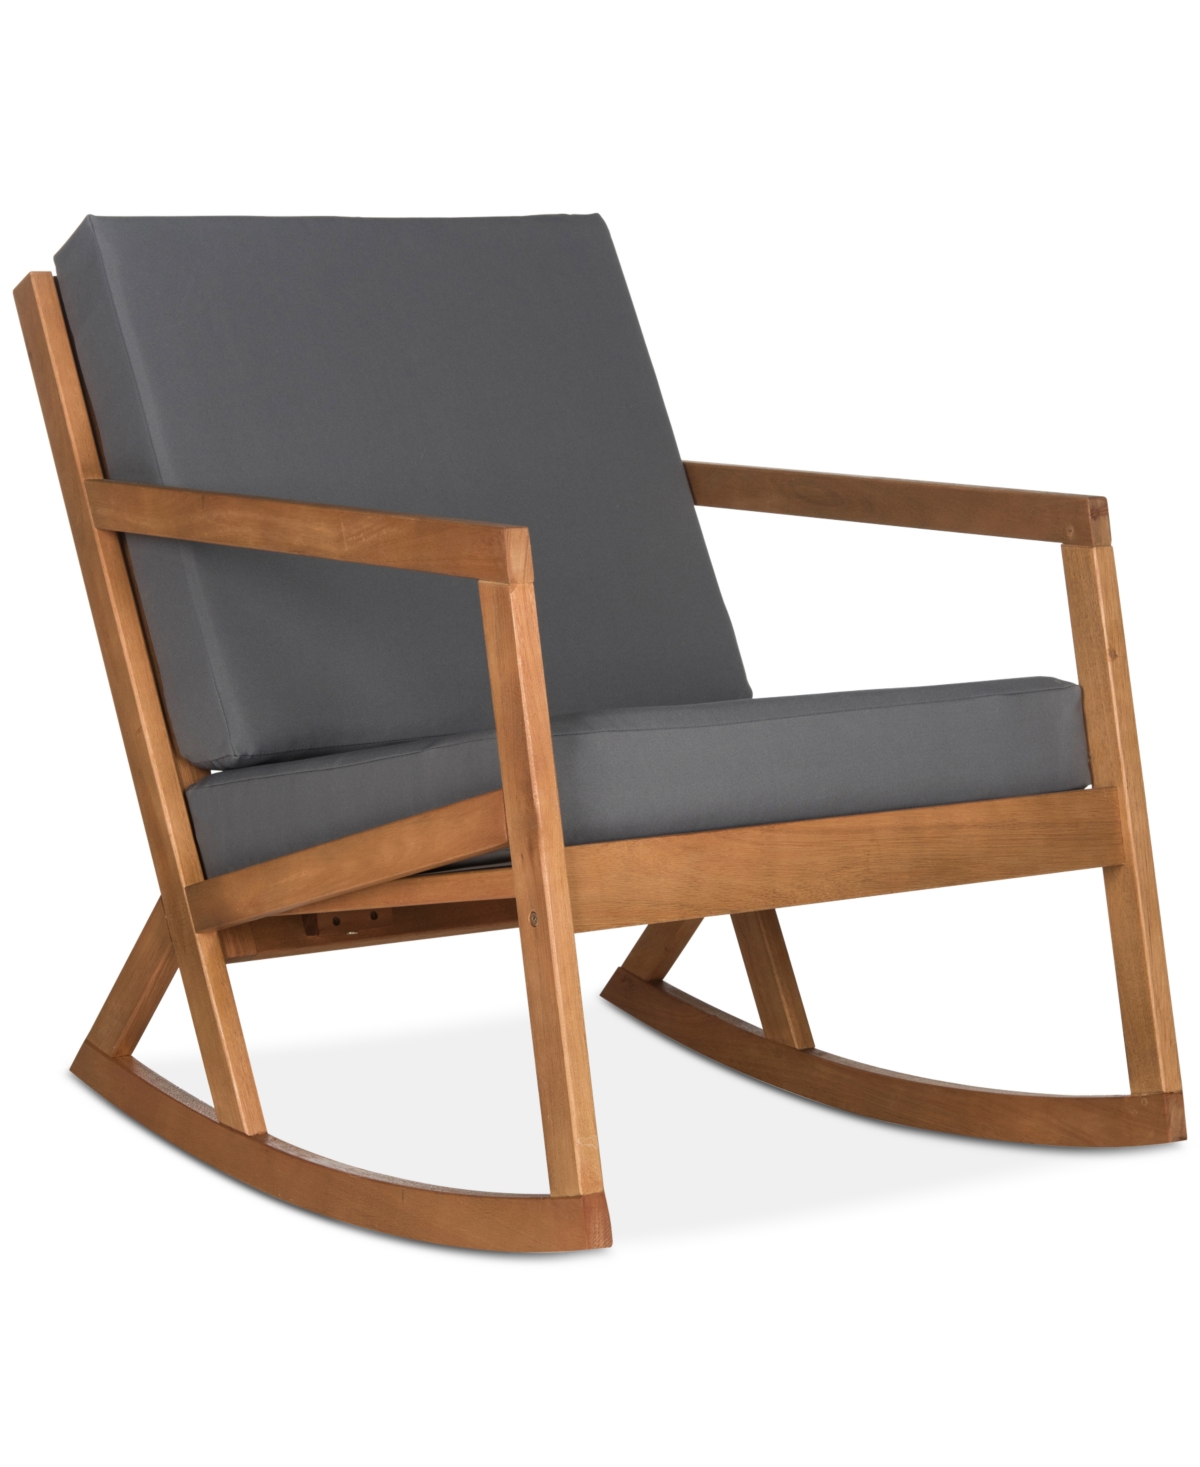 Shop Safavieh Nicksen Outdoor Rocking Chair In Teak Brown,grey